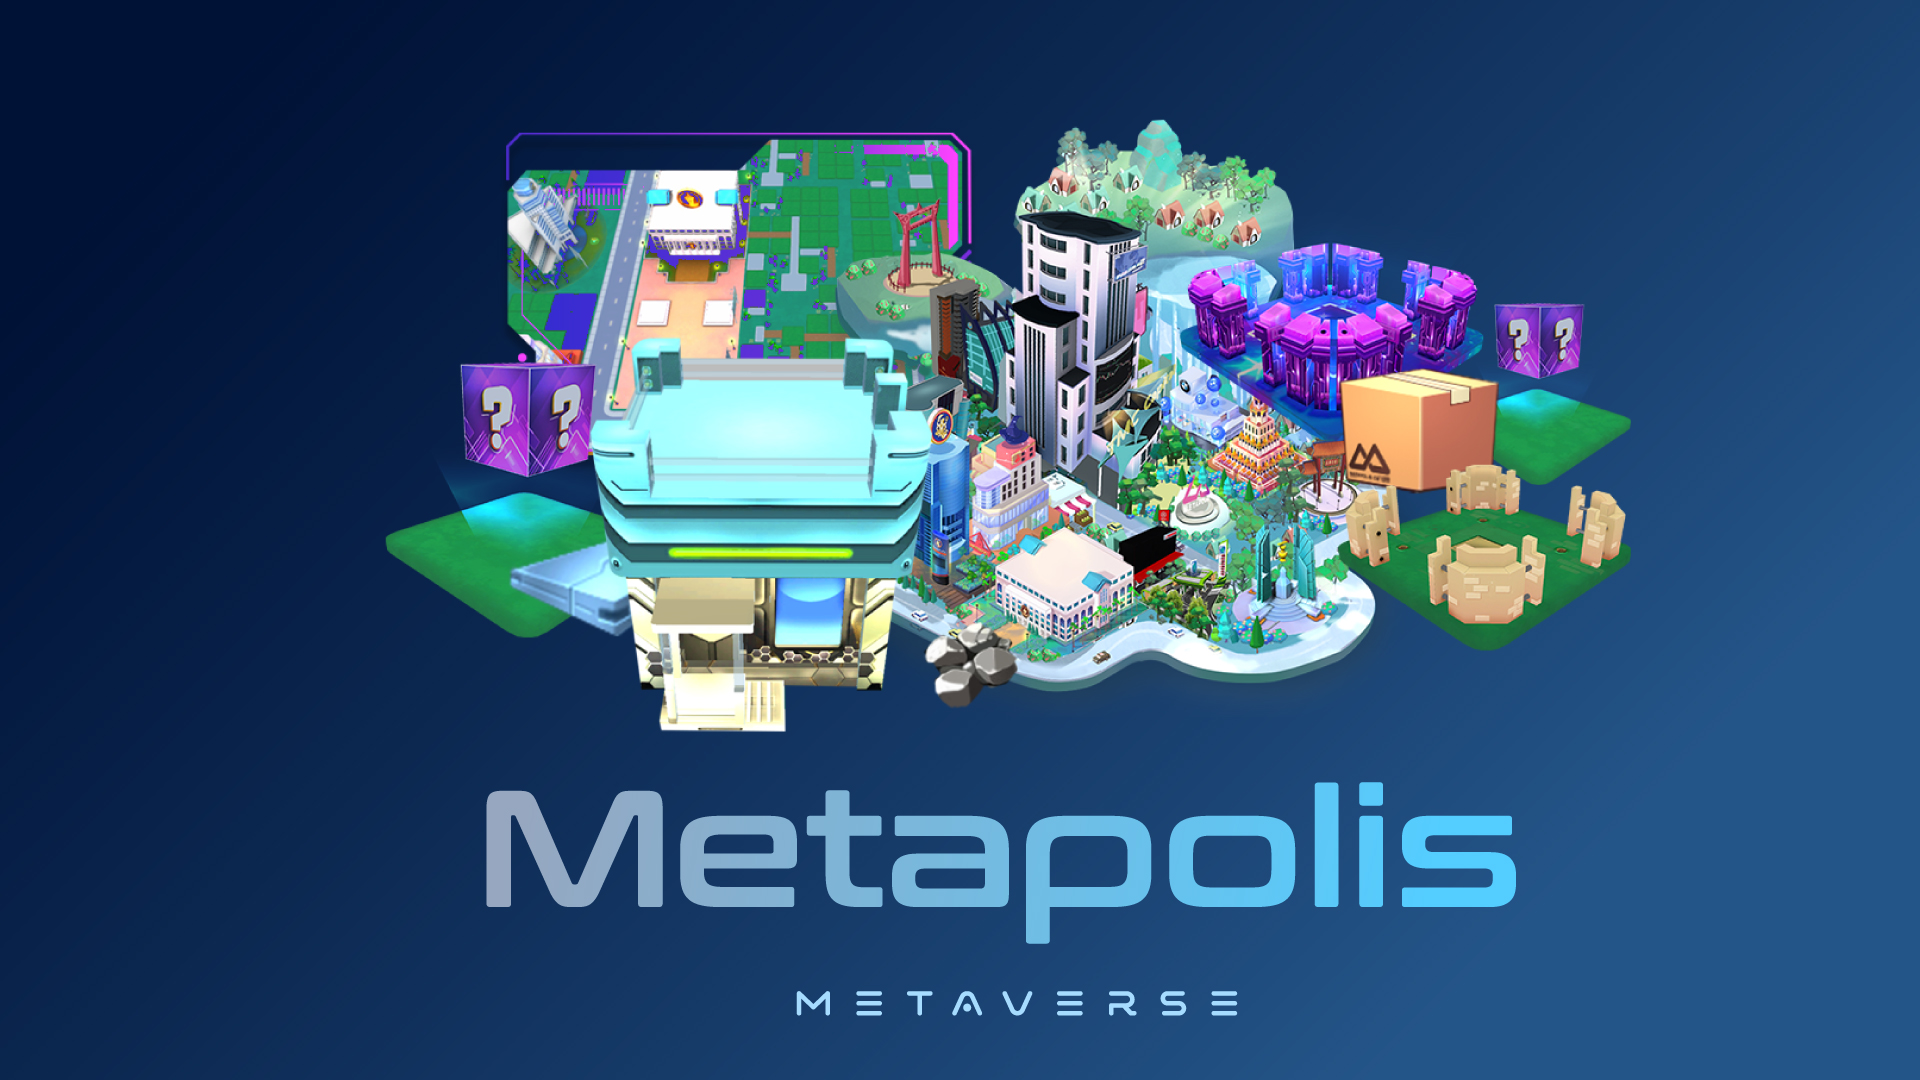 เปิดตัว ‘Metapolis’ เมตาเวิร์สไทยแท้แห่งใหม่ จากความร่วมมือทั้งภาครัฐ-เอกชน !